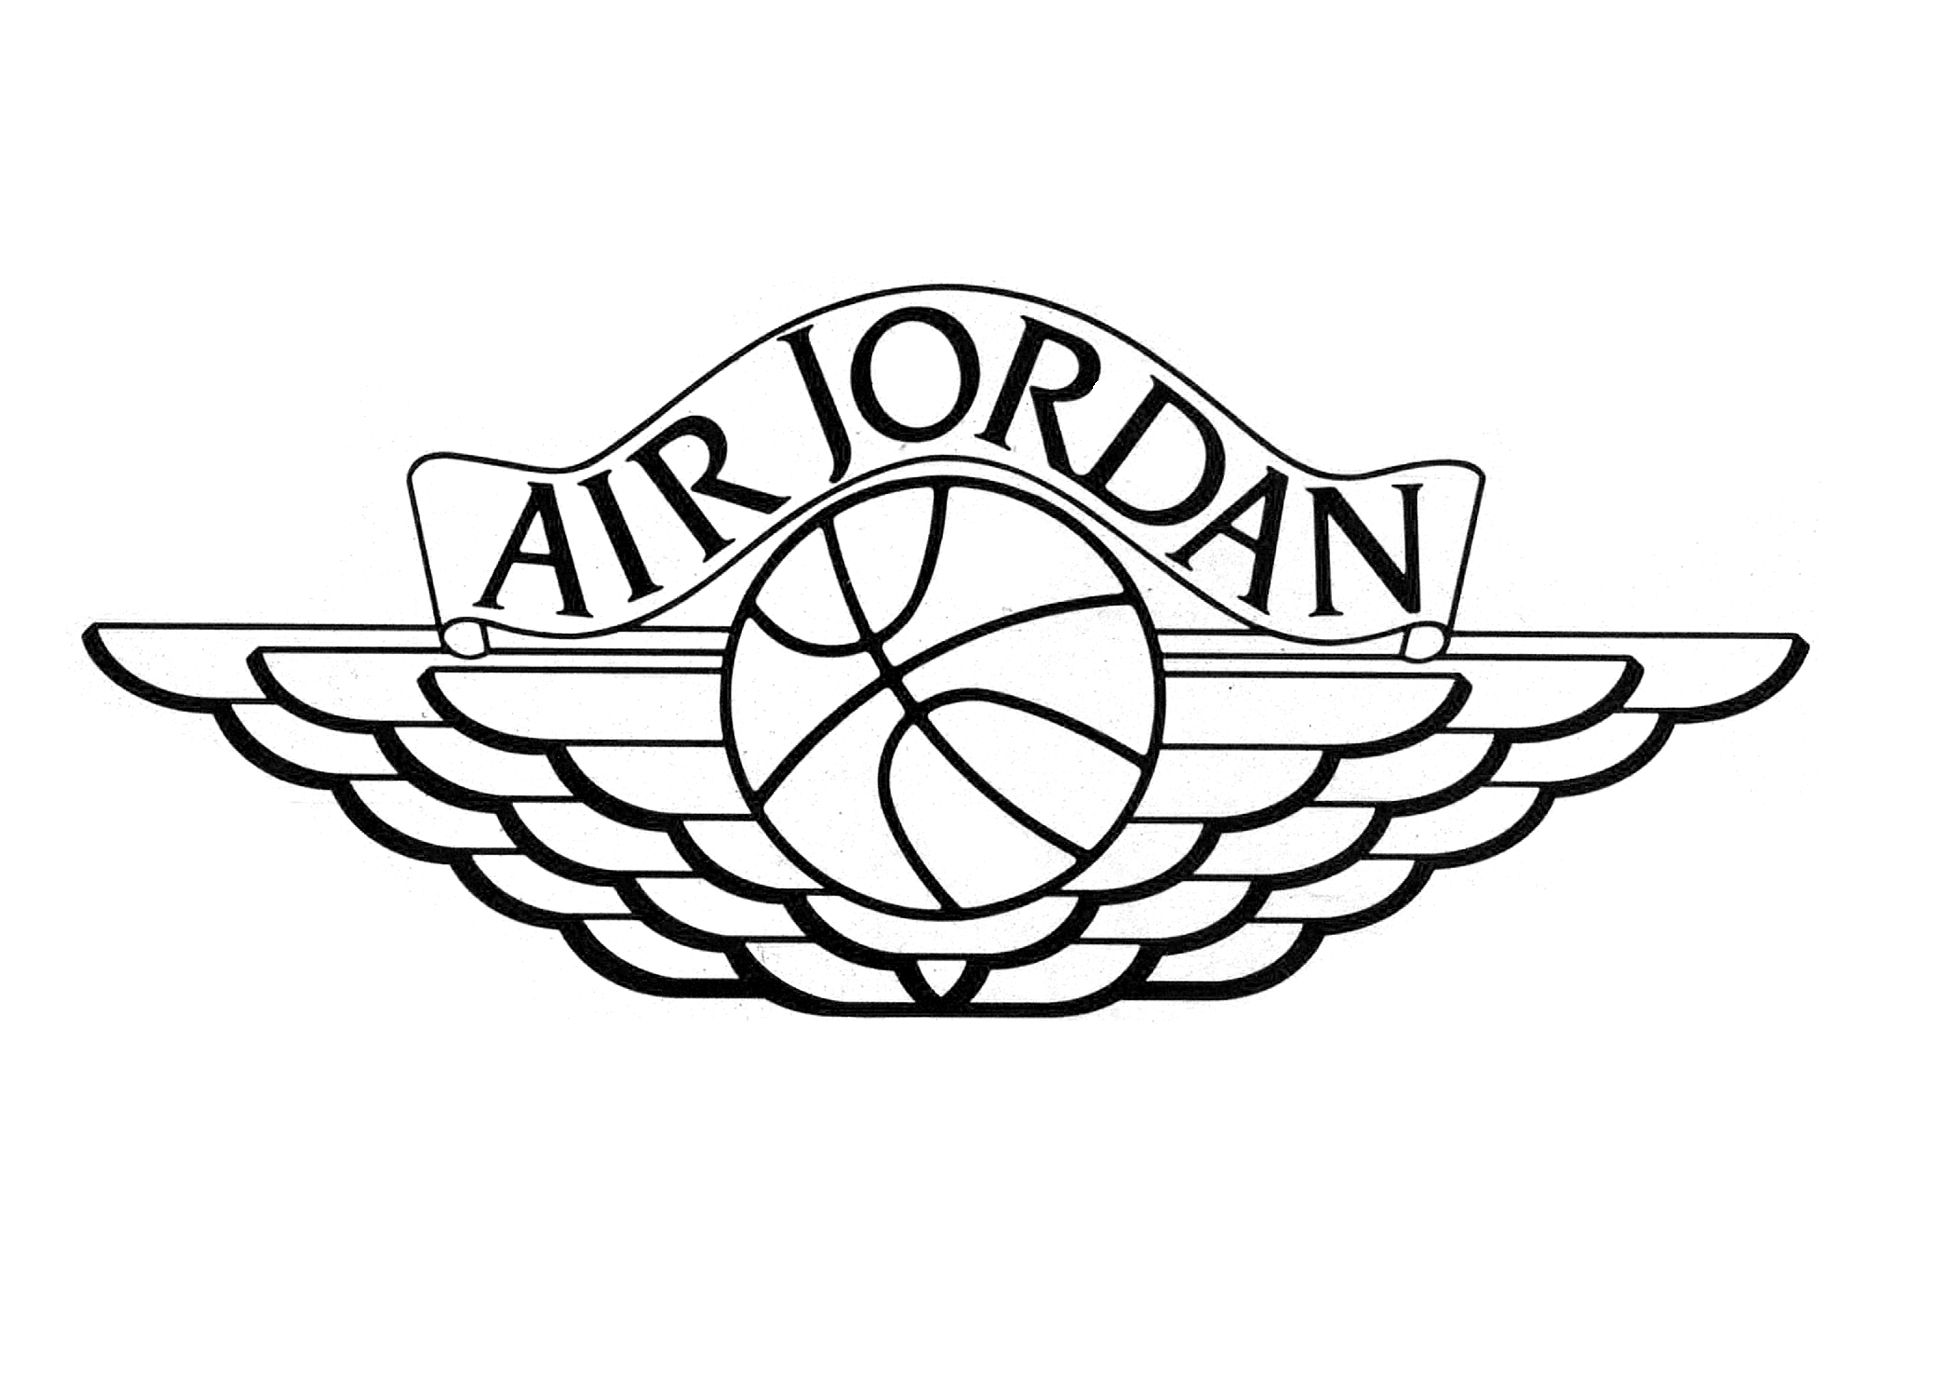 Air Jordan Coloring Pages - Air Jordan Coloring Pages 1